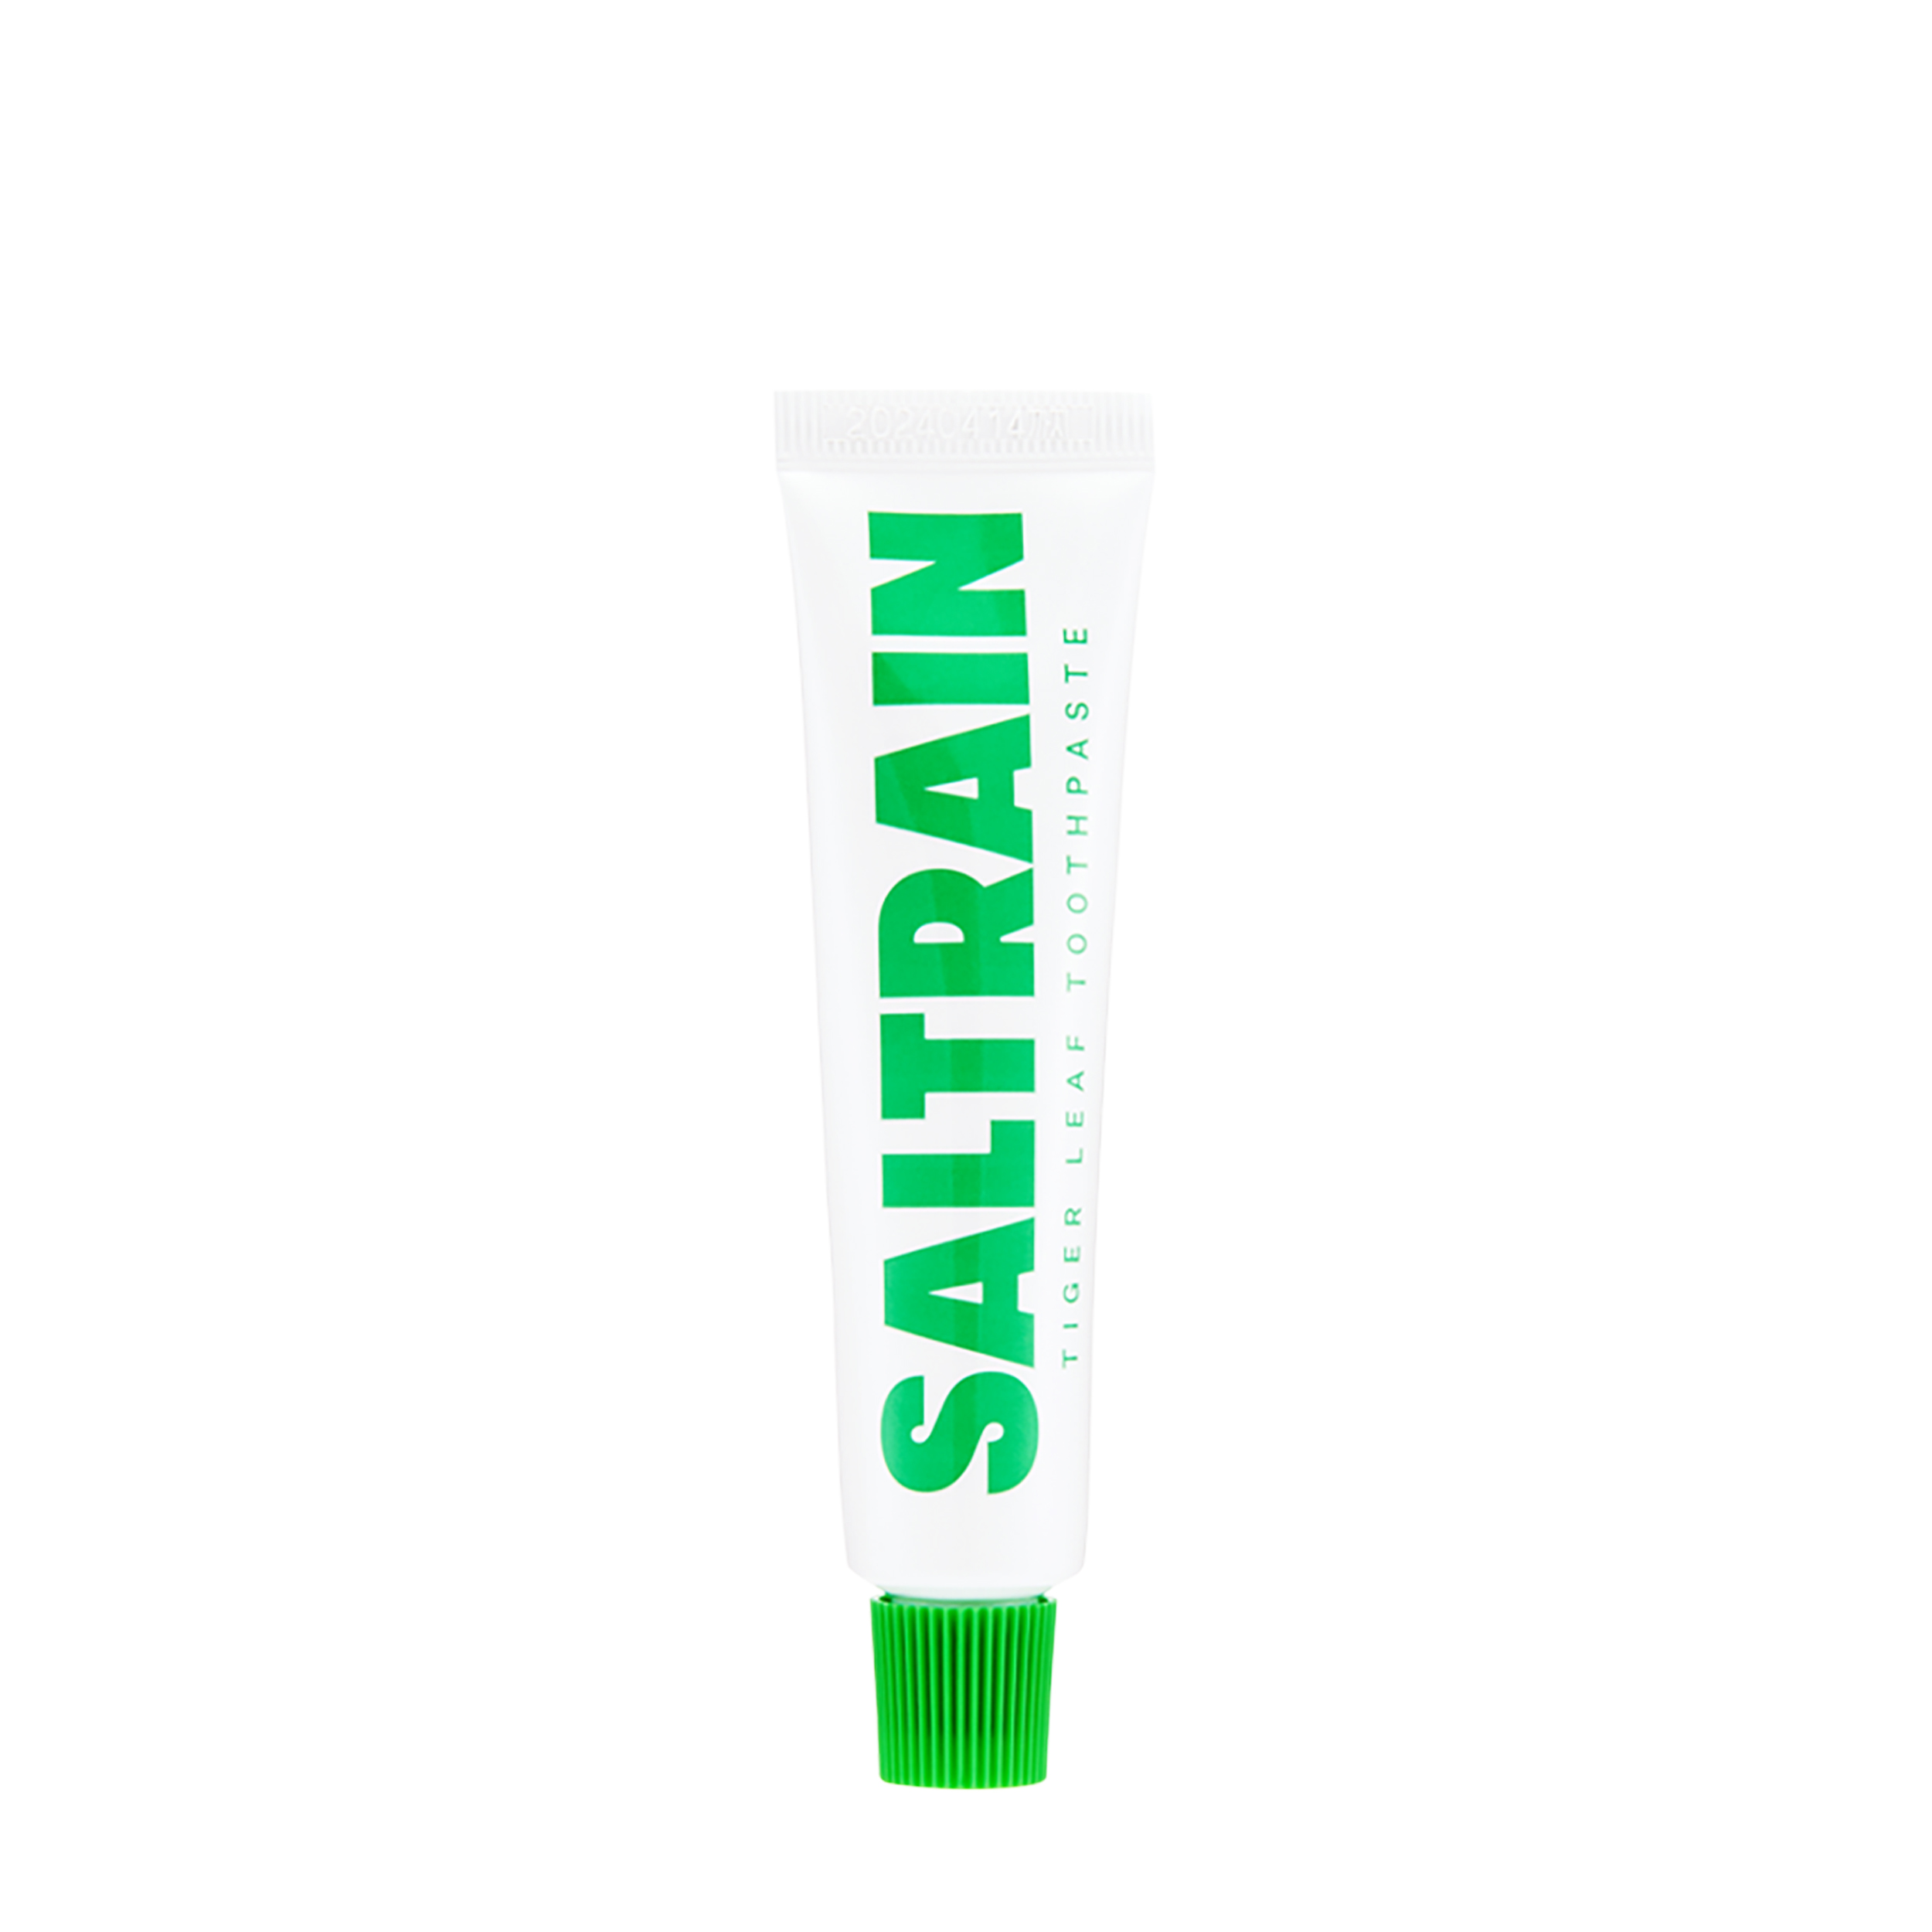 SALTRAIN SALTRAIN Успокаивающая зубная паста без фтора Tiger Leaf Toothpaste в дорожном формате 30 гр